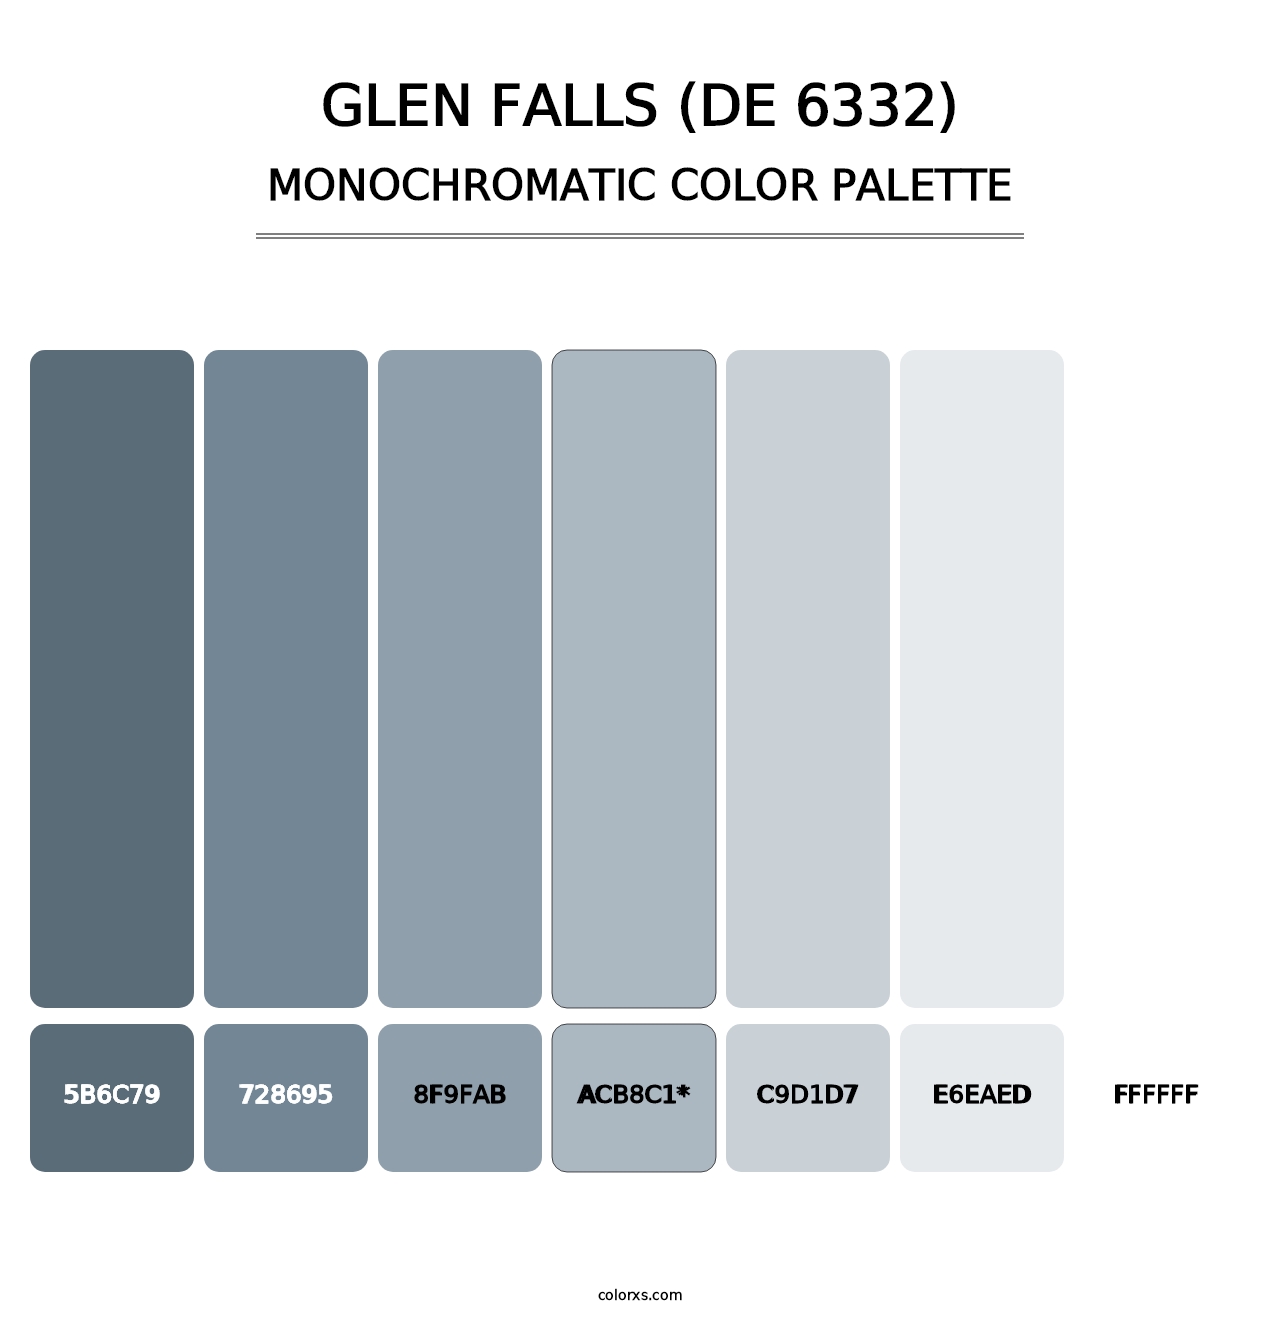 Glen Falls (DE 6332) - Monochromatic Color Palette